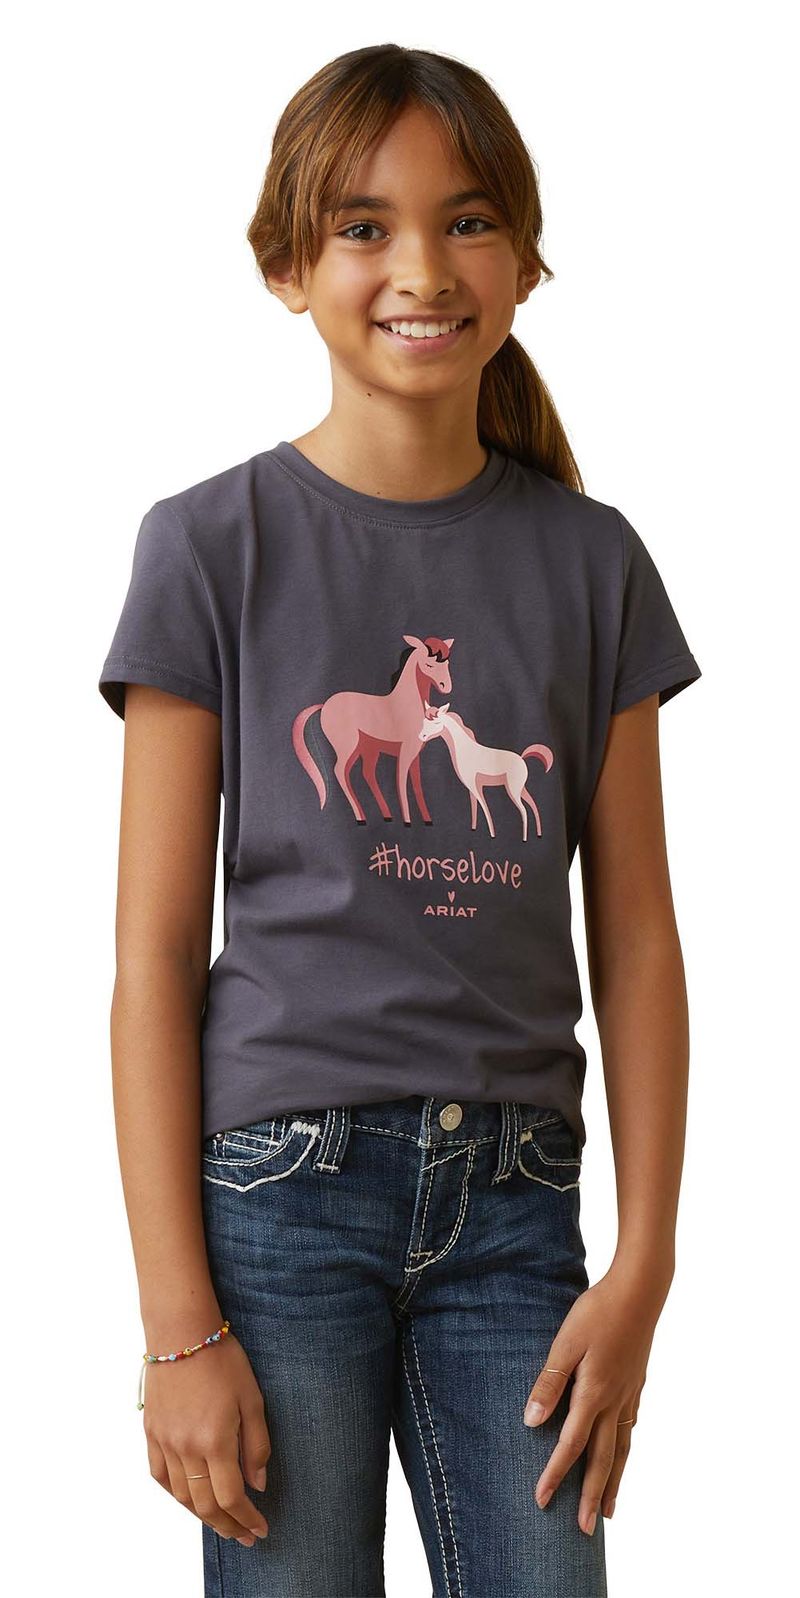 Ariat-Girls--horselove-T-Shirt-Small